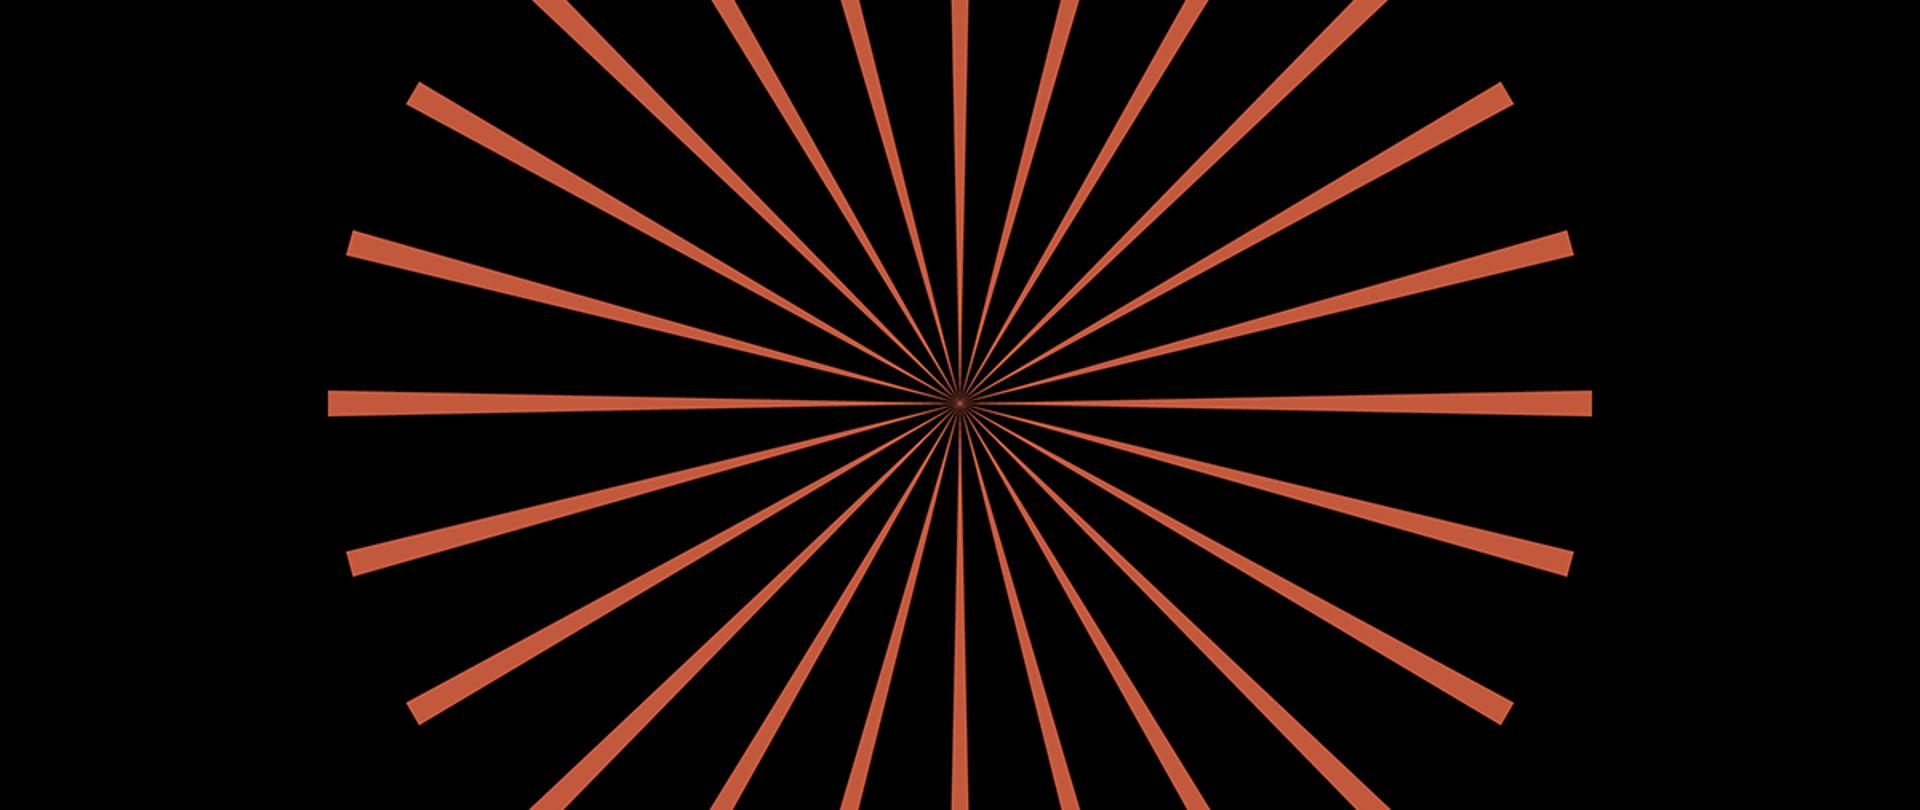 Grafika przedstawiająca pomarańczowe promienie na czarnym tle rozchodzące się od środka.